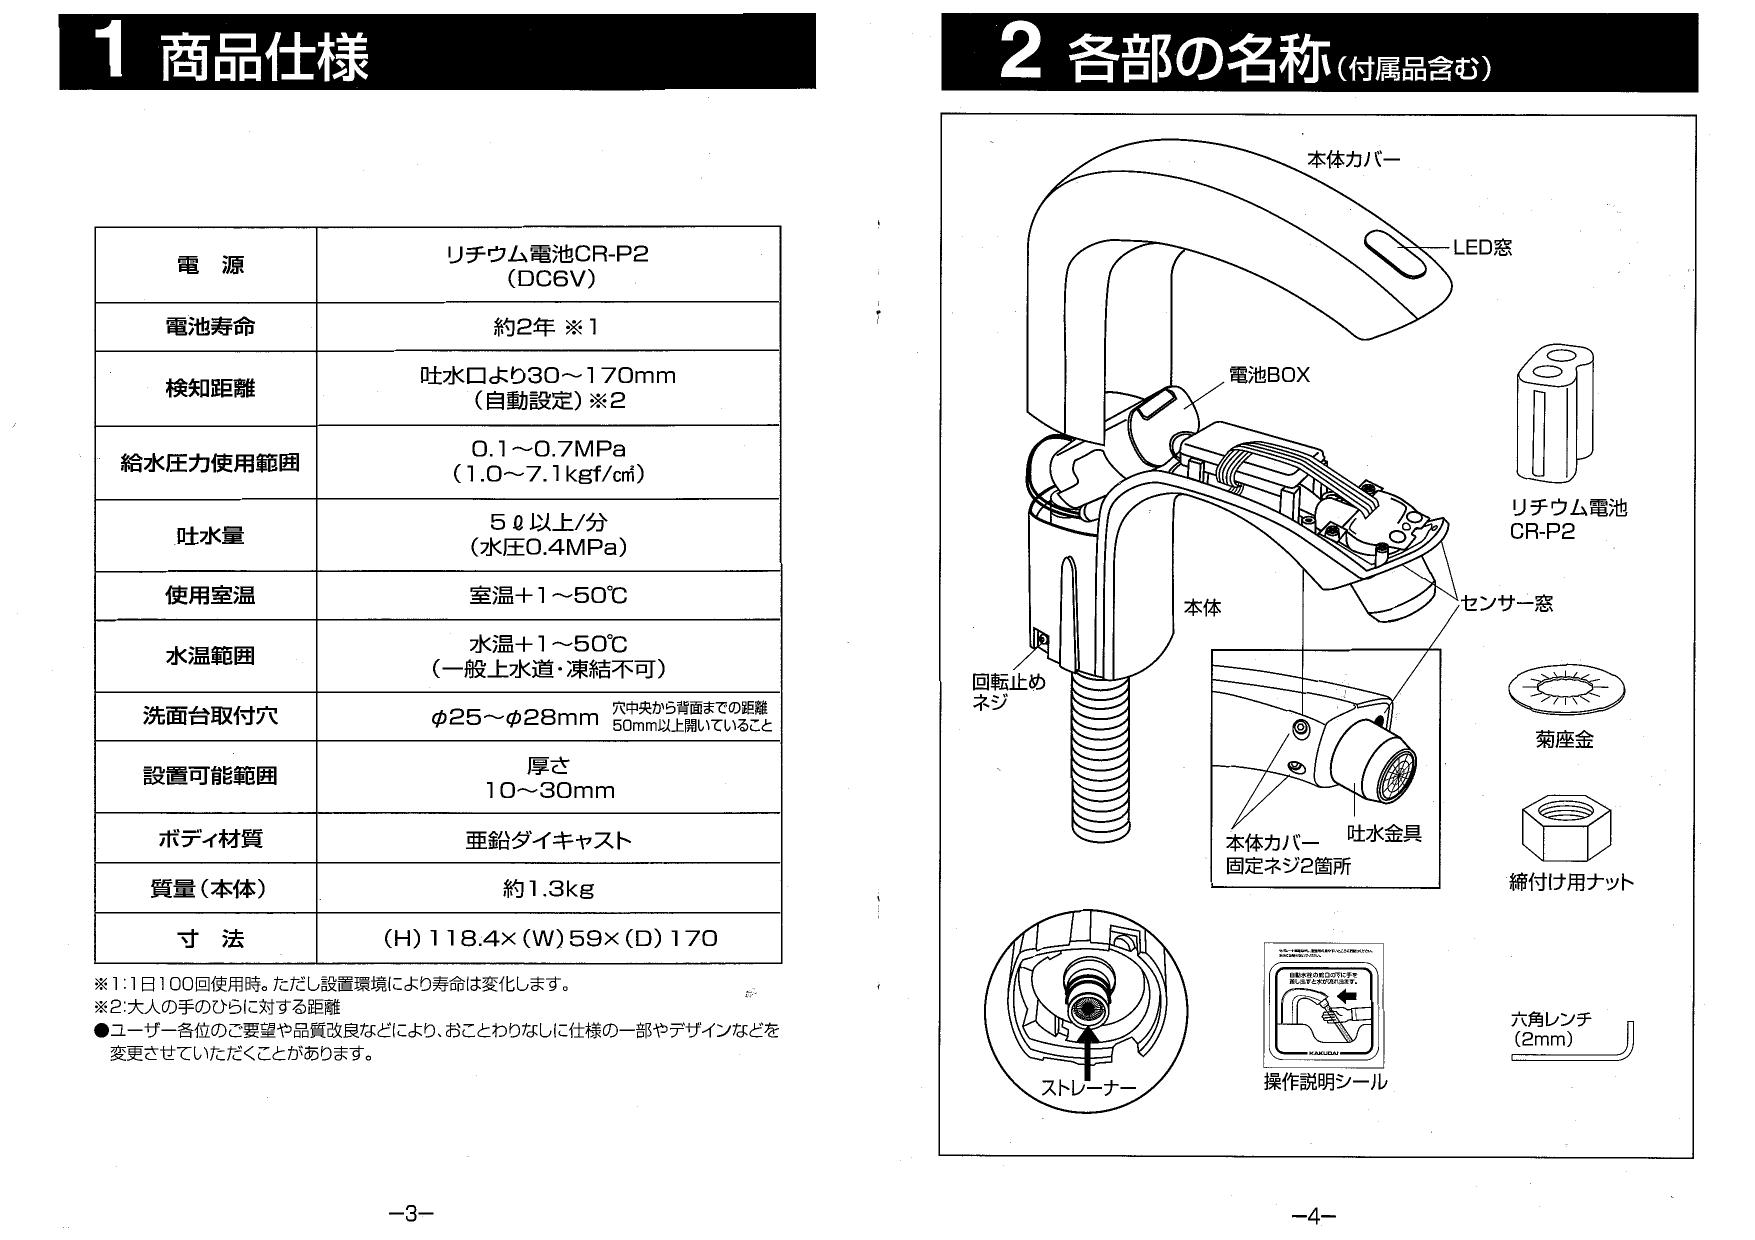 購買 カクダイ KAKUDAI センサー混合栓 713-401 1個